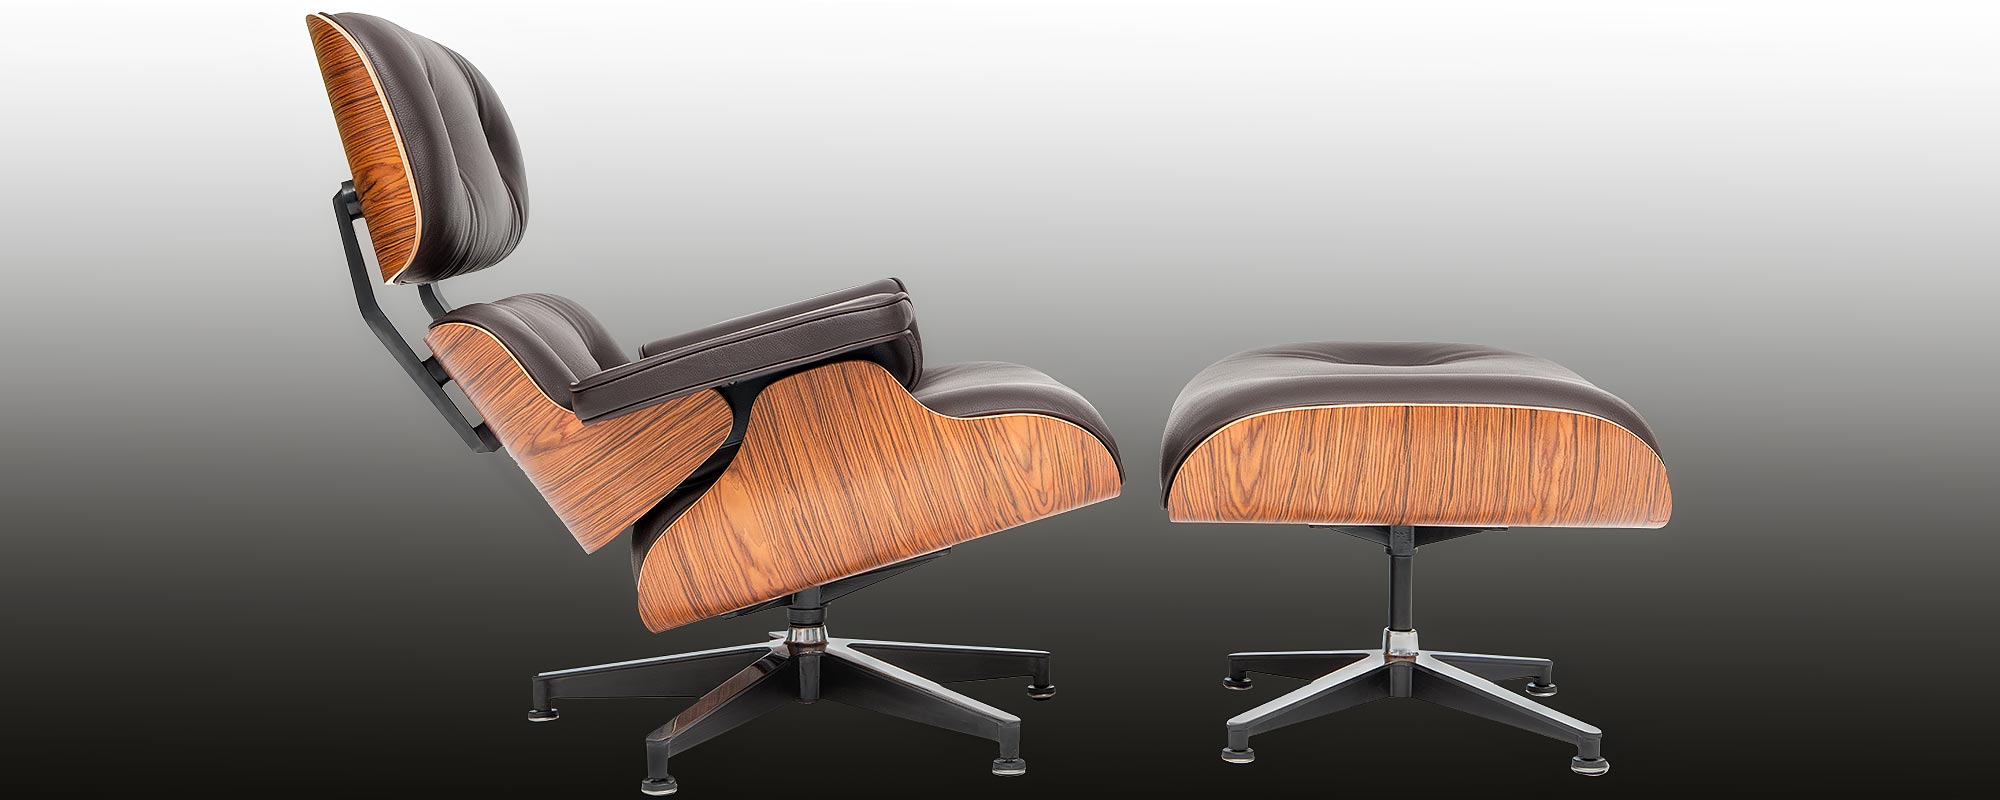 Der Eames Lounge Chair | ein steelform Designklassiker